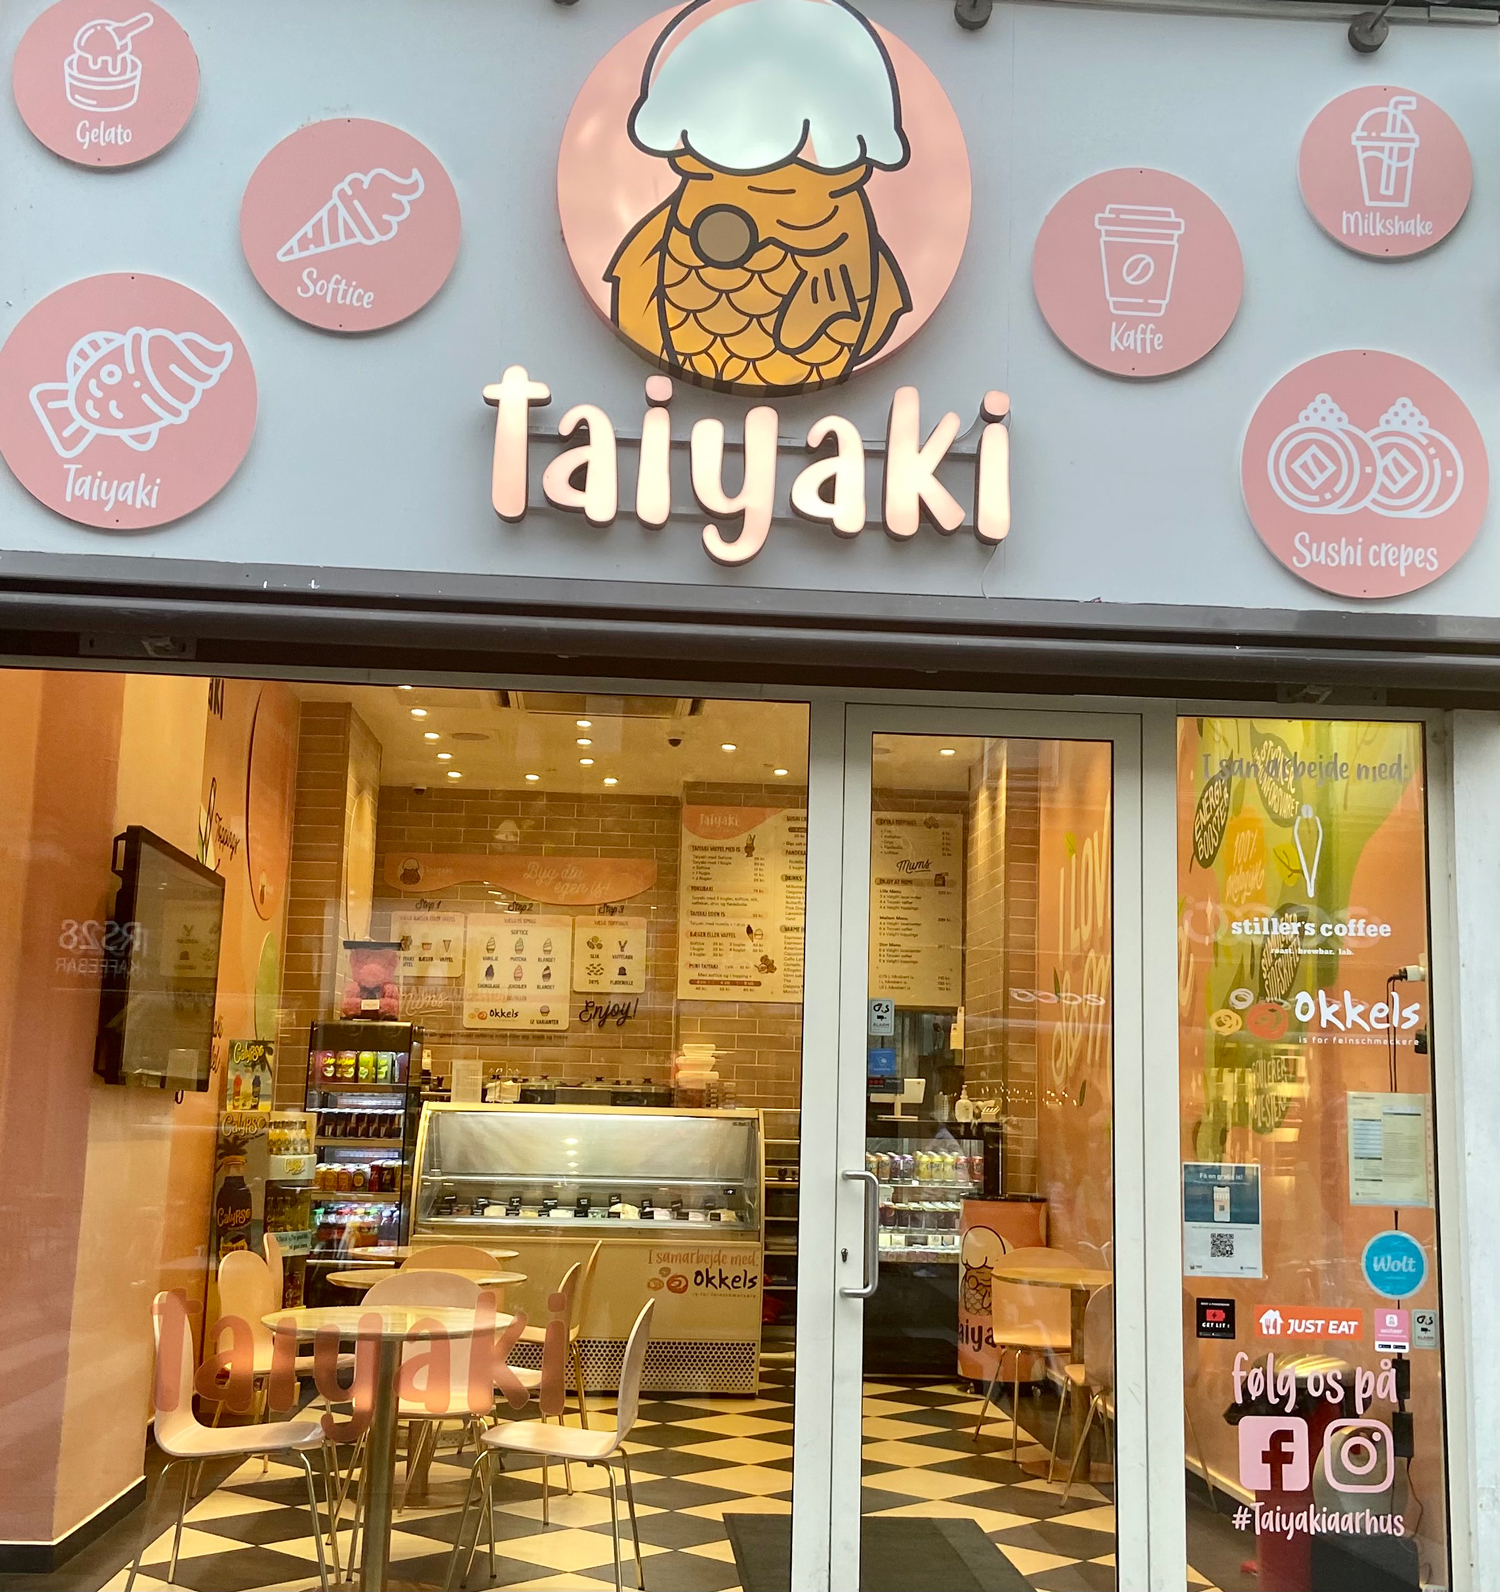 Taiyaki isbutik